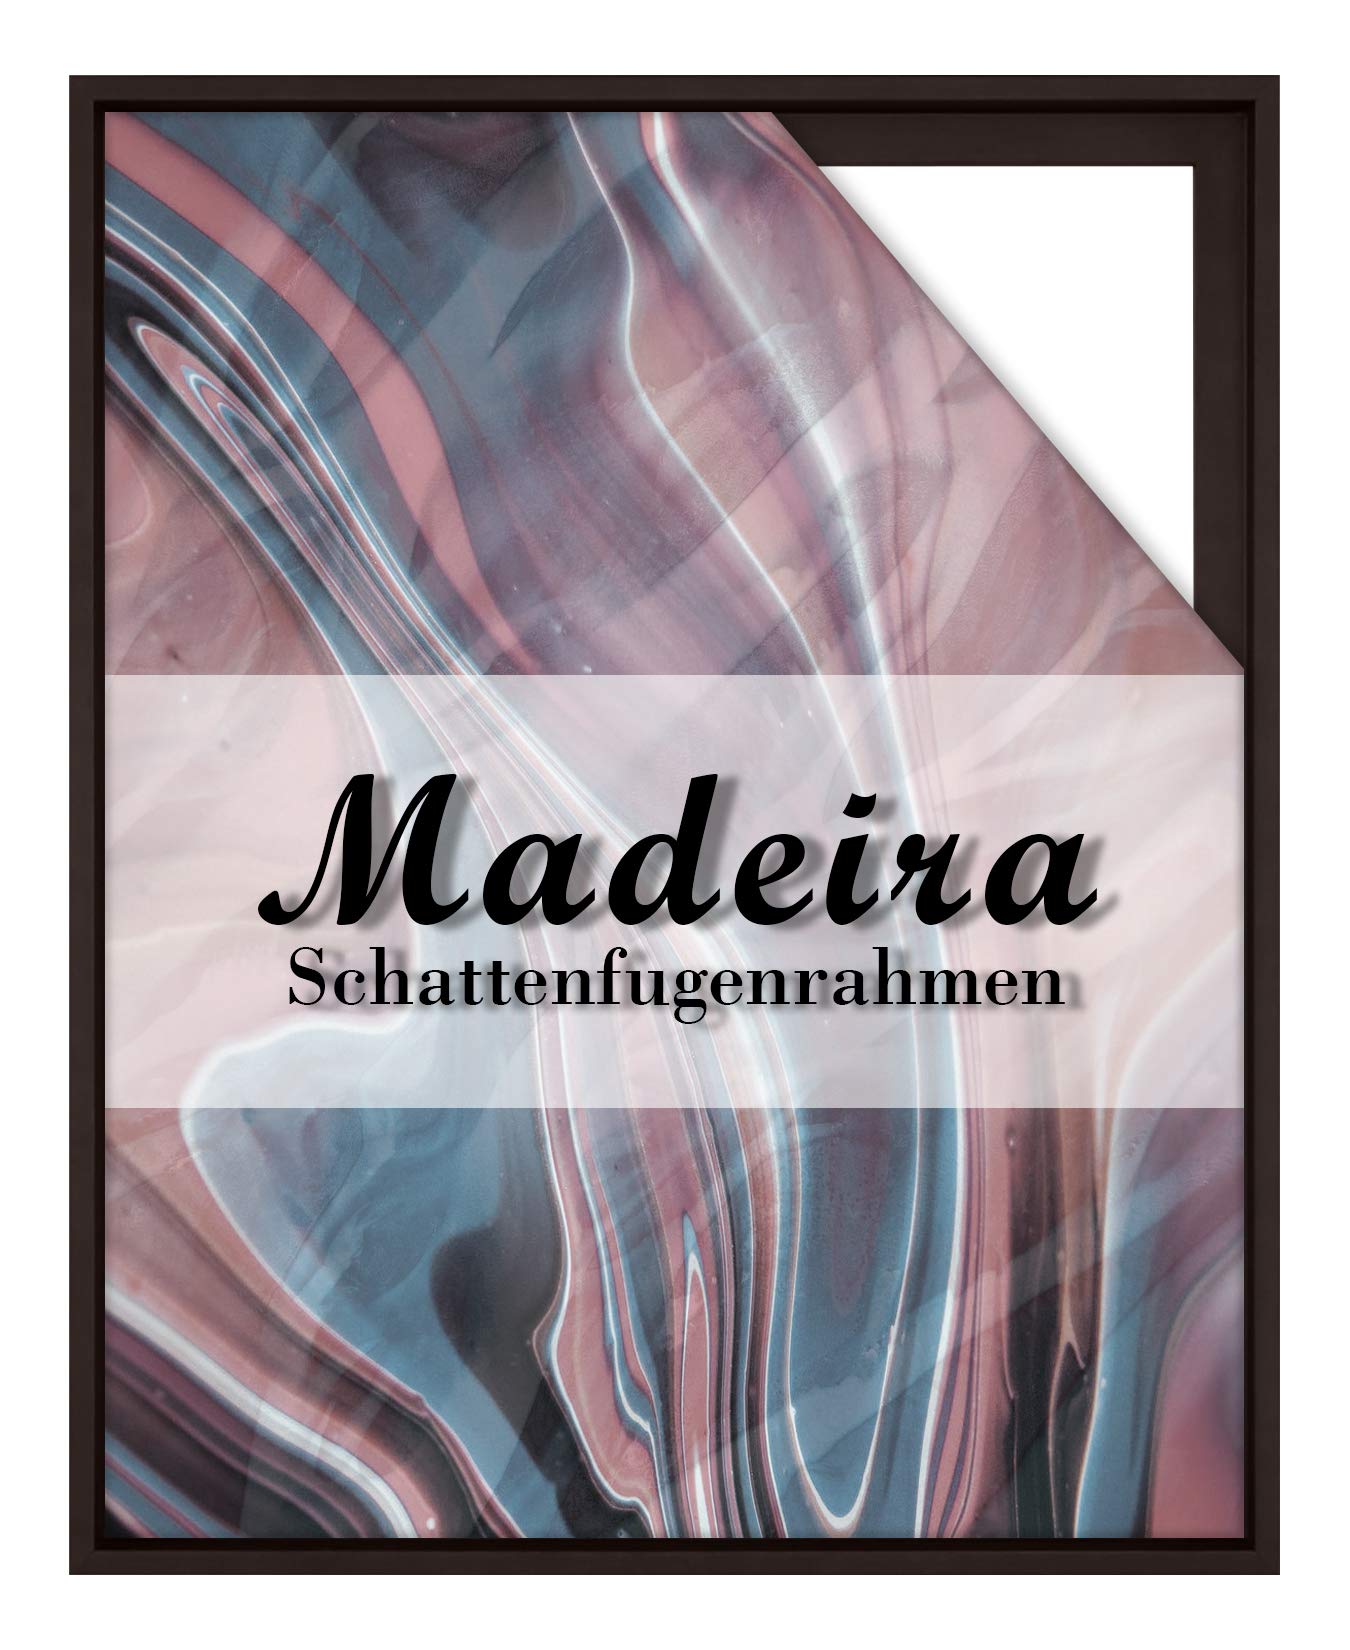 BIRAPA Madeira Schattenfugenrahmen für Leinwand 75x100 cm in Dunkelbraun, Holzrahmen, Rahmen für Leinwände, Leerrahmen für Leinwand, Schattenfugenrahmen für Keilrahmen